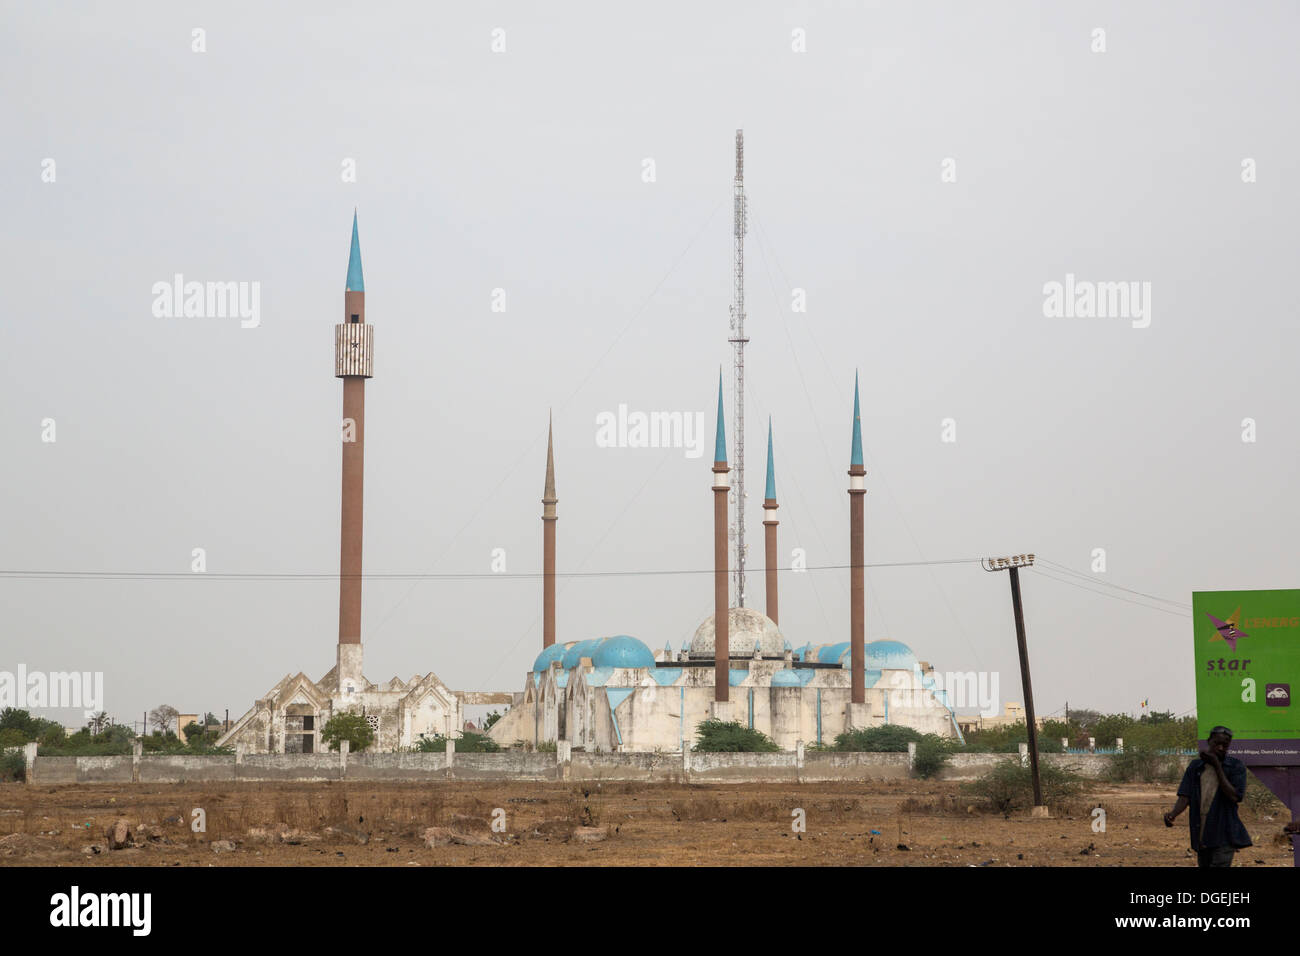 Les minarets de la mosquée, de hauteur, et tour de télécommunication, Kaolack, Sénégal. Banque D'Images